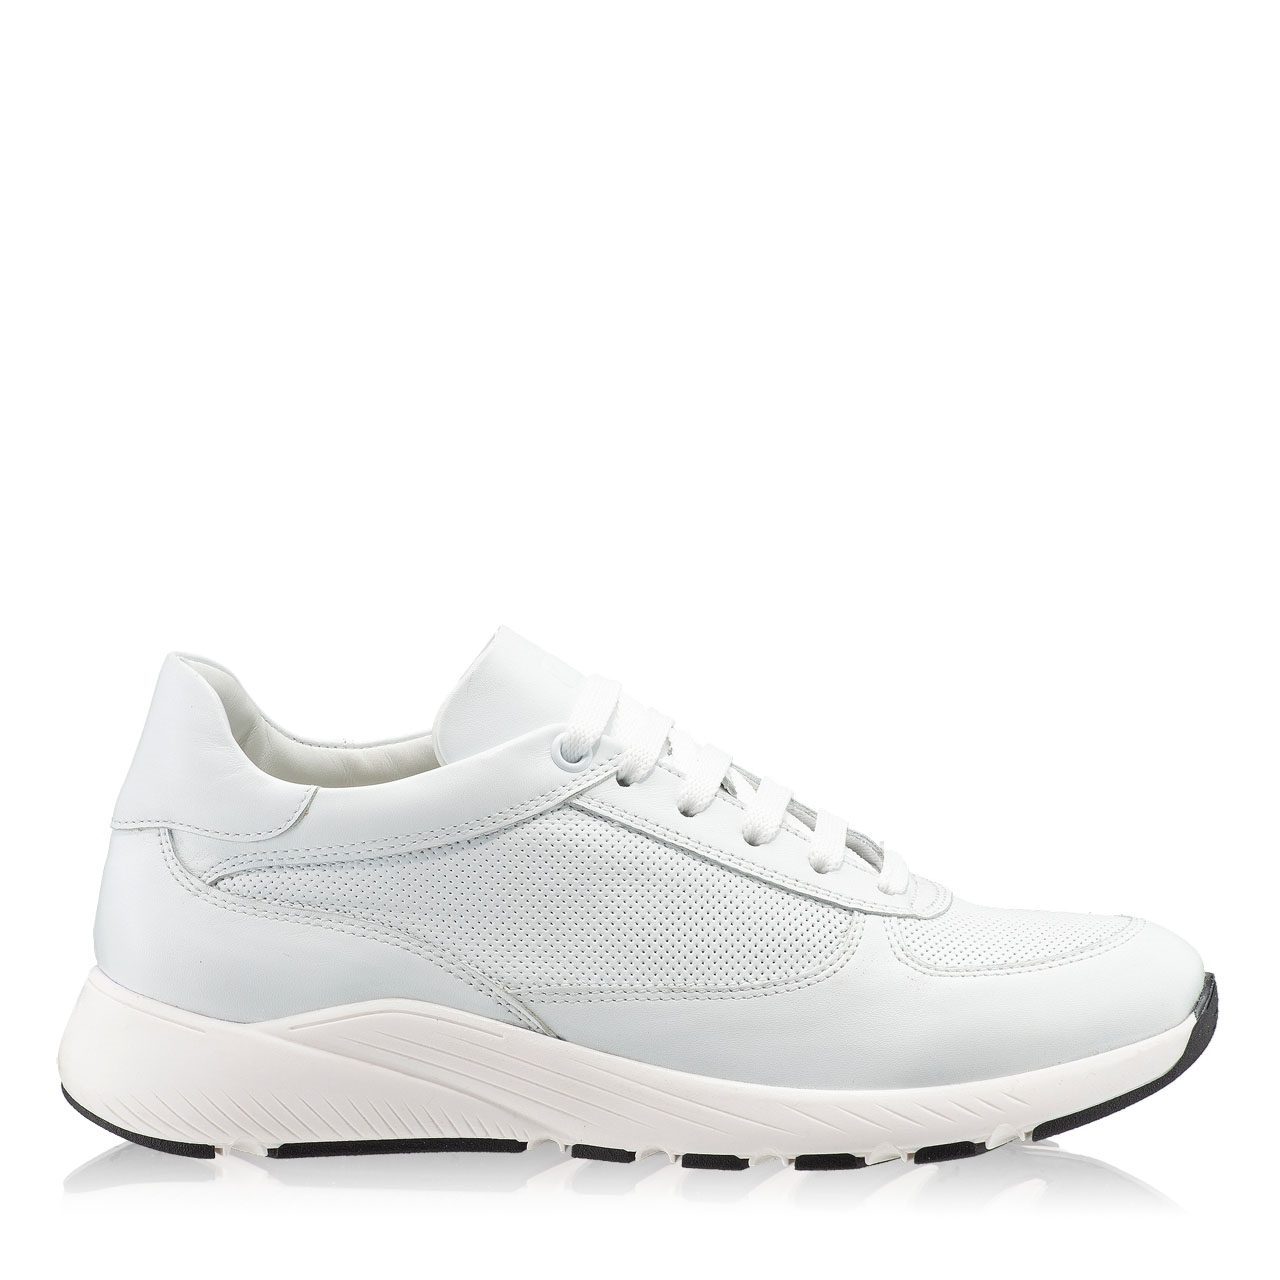 Pantofi Sport 7115 Vitello Bianco